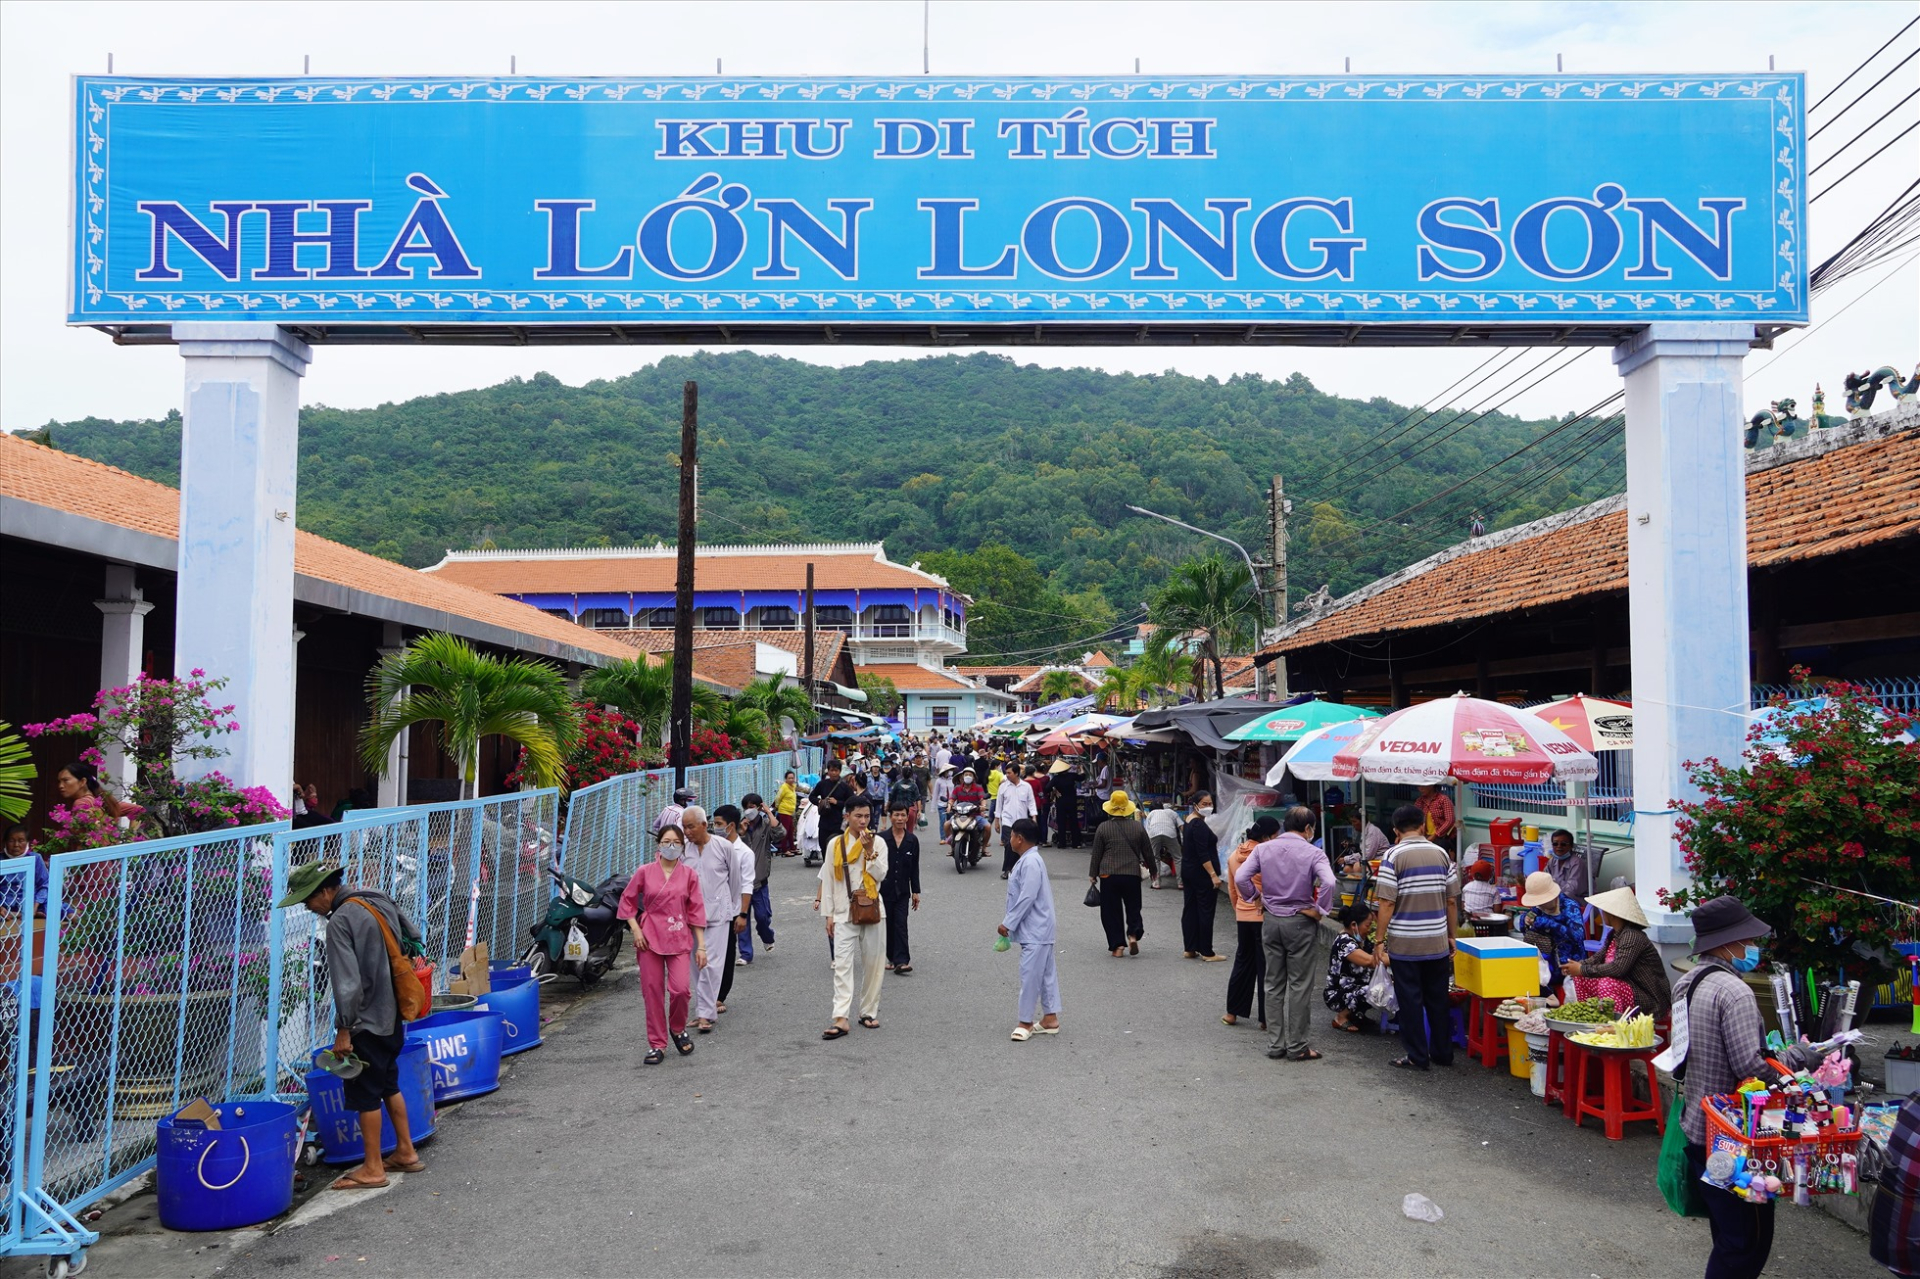 Ngôi làng Long Sơn thu hút nhiều người đến tham quan, tìm hiểu vì những tập tục đặc biệt